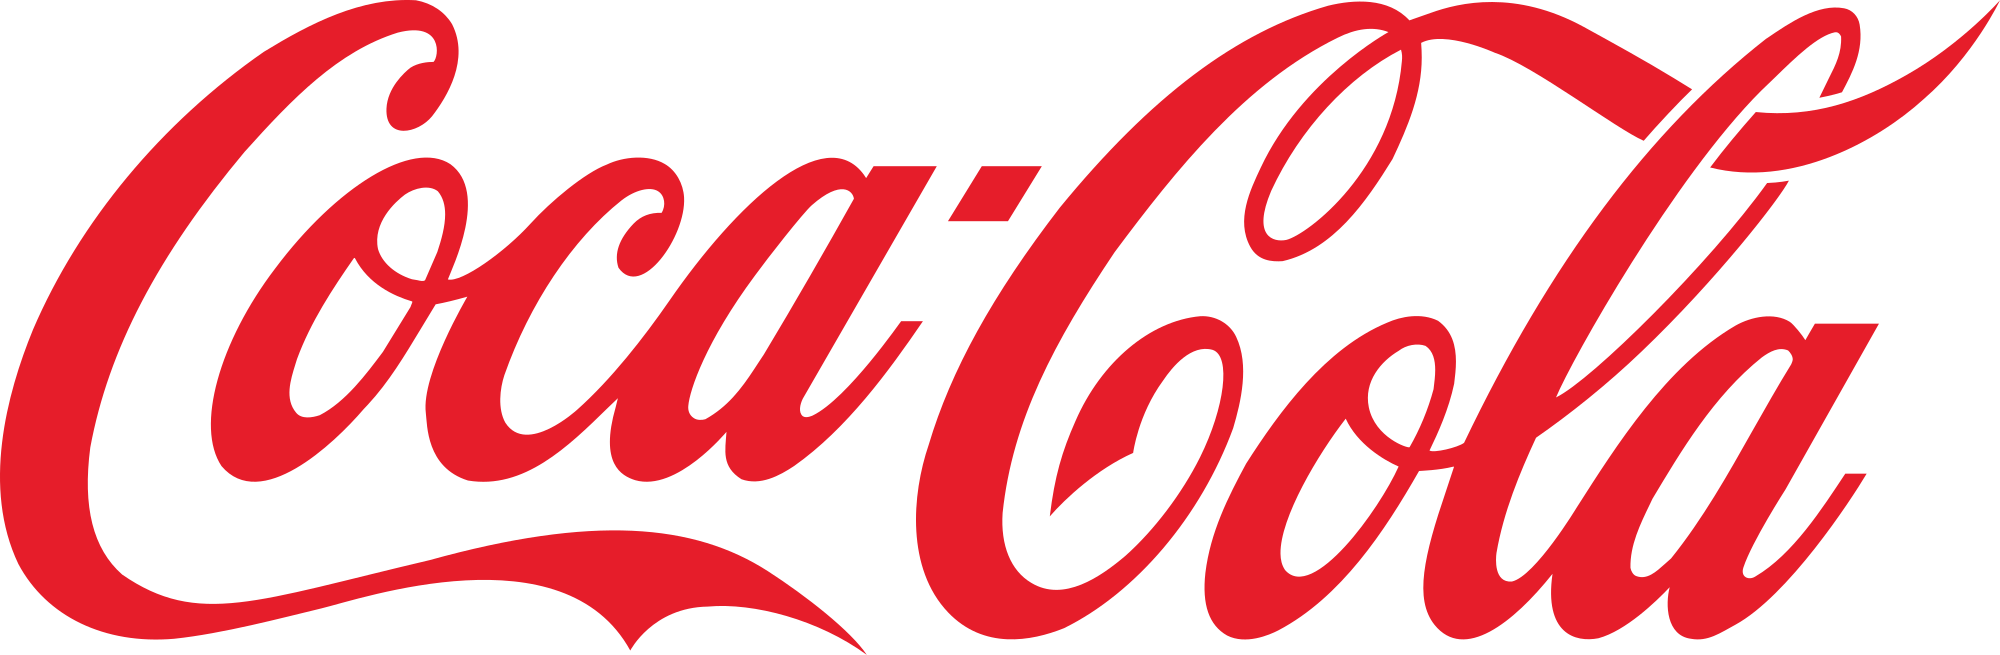 Coca Cola Transparent Png